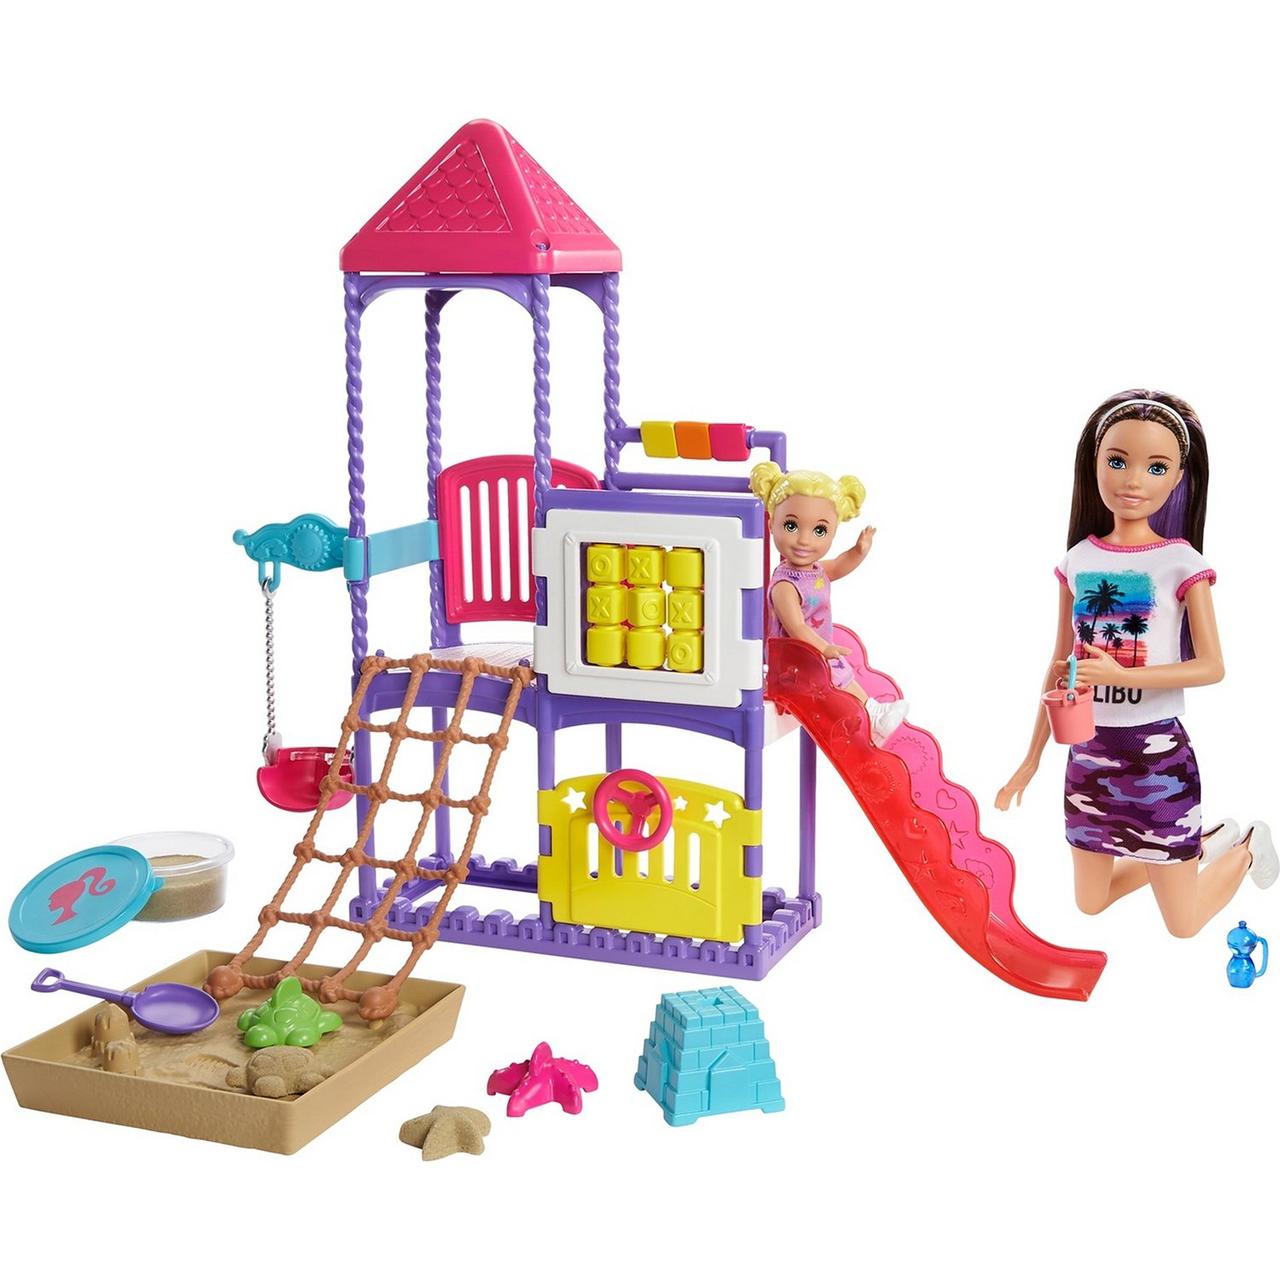 Barbie Игровой Набор "Скиппер, Нянечки" Игровая площадка Барби с песочницей